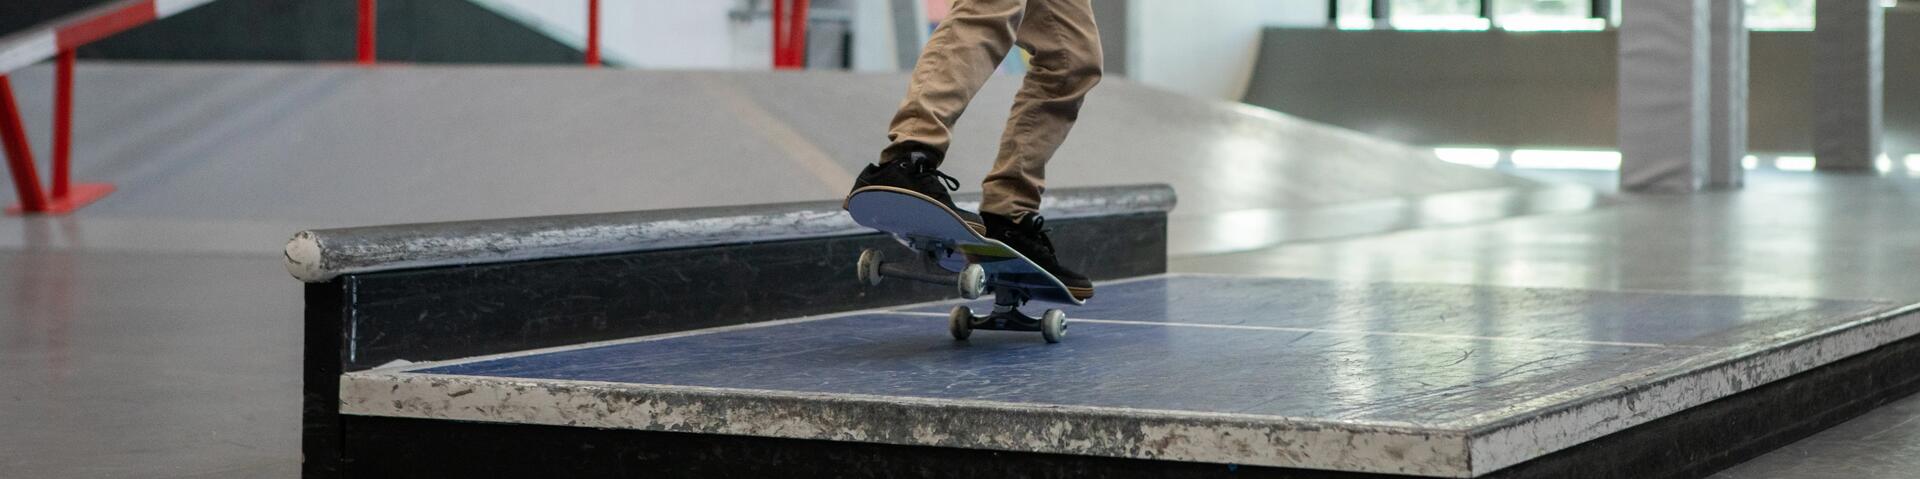 Quelle planche de skateboard complète pour débuter ?